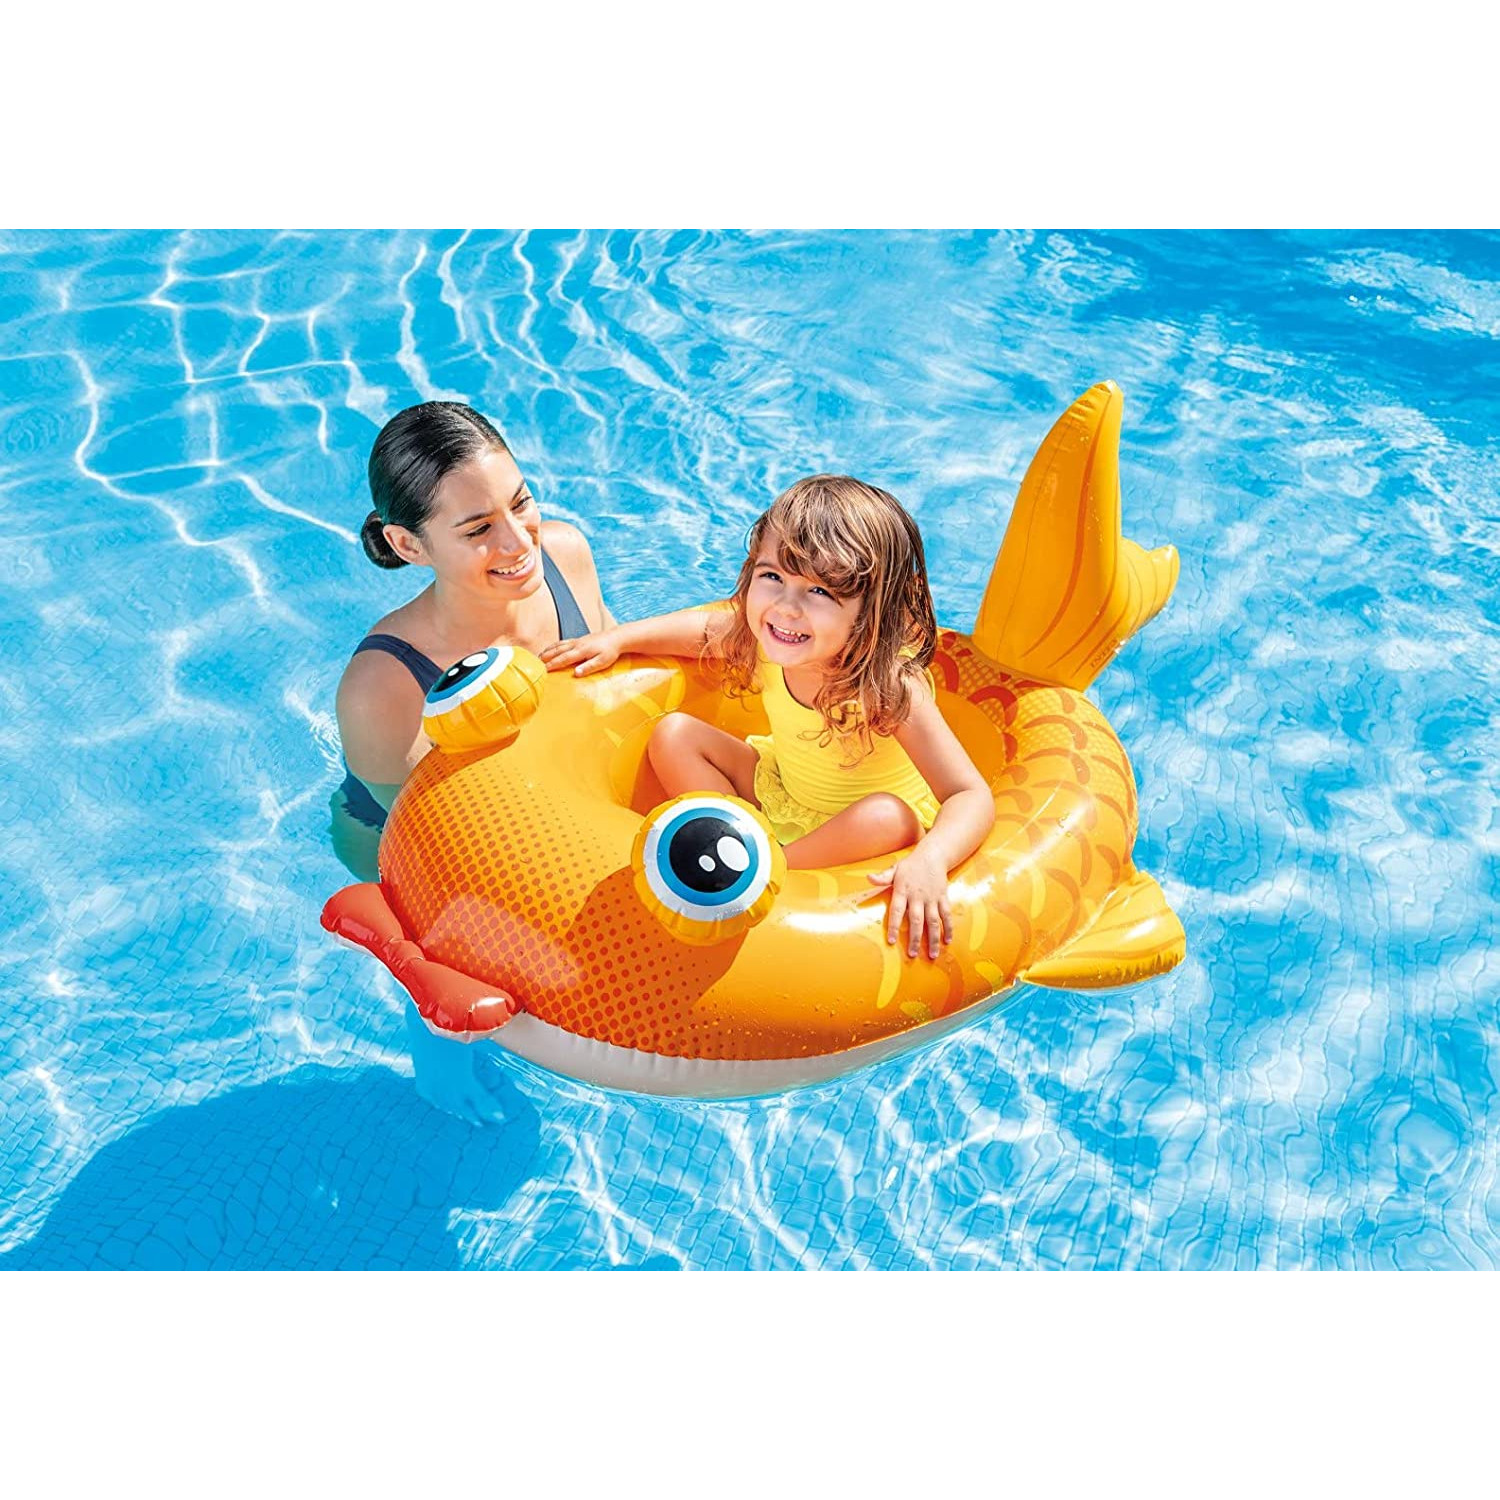 Fisch - 59380NP Baby-Boot mehrfarbig INTEX (110x100cm) Wasserspiel, Pool-Cruiser -